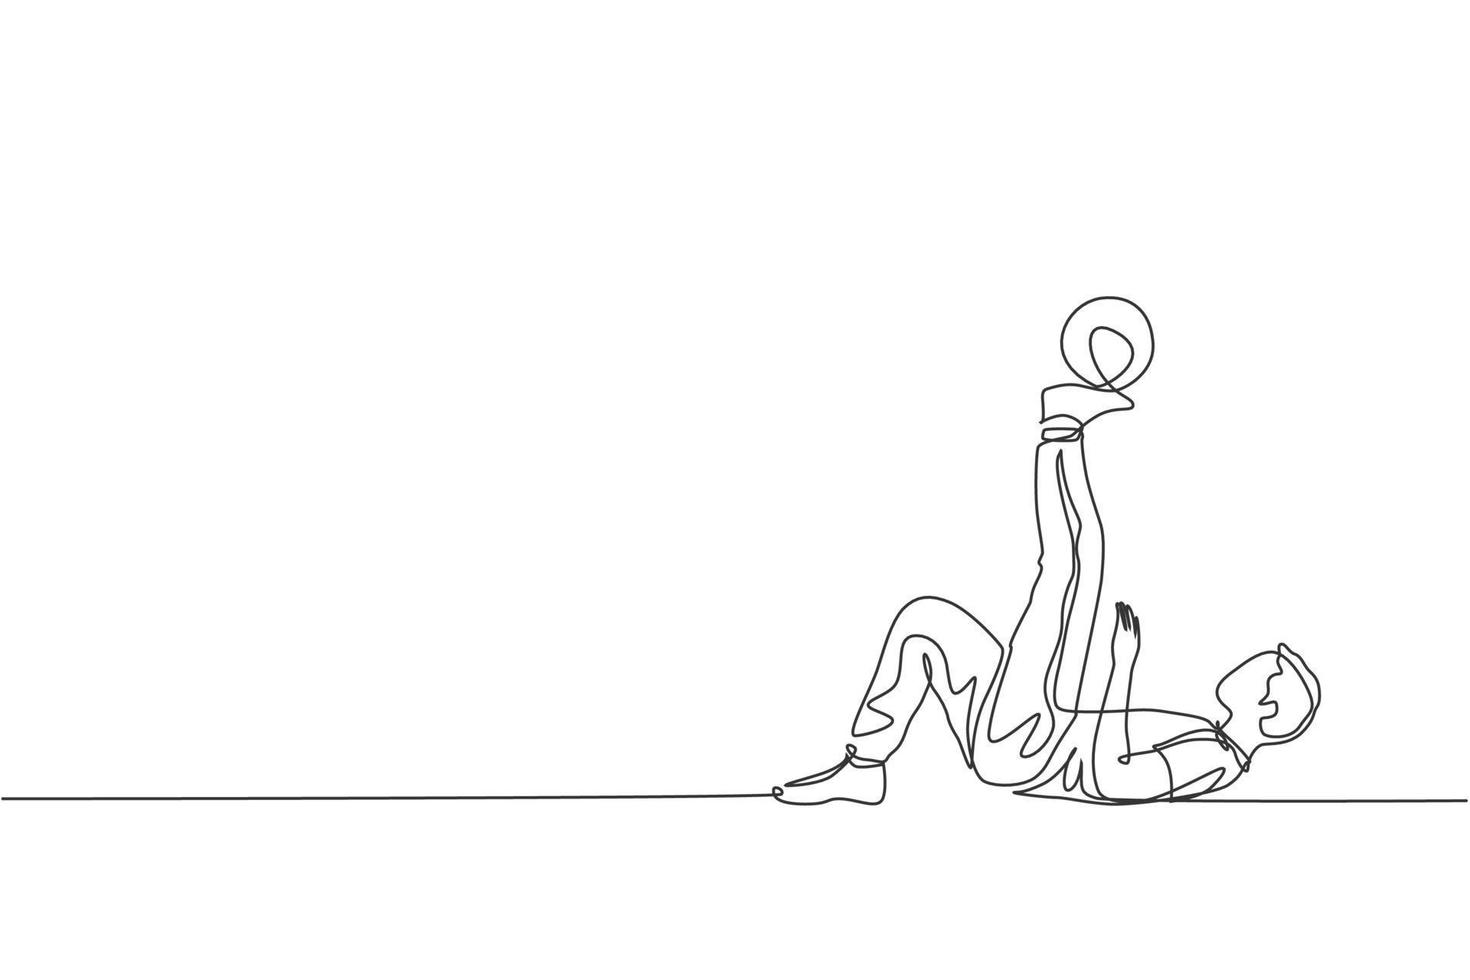 um desenho de linha contínua da prática de freestyler de futebol jovem desportivo segure a bola com o dedo do pé na rua. conceito de esporte freestyle de futebol. ilustração em vetor design de desenho de linha única dinâmica